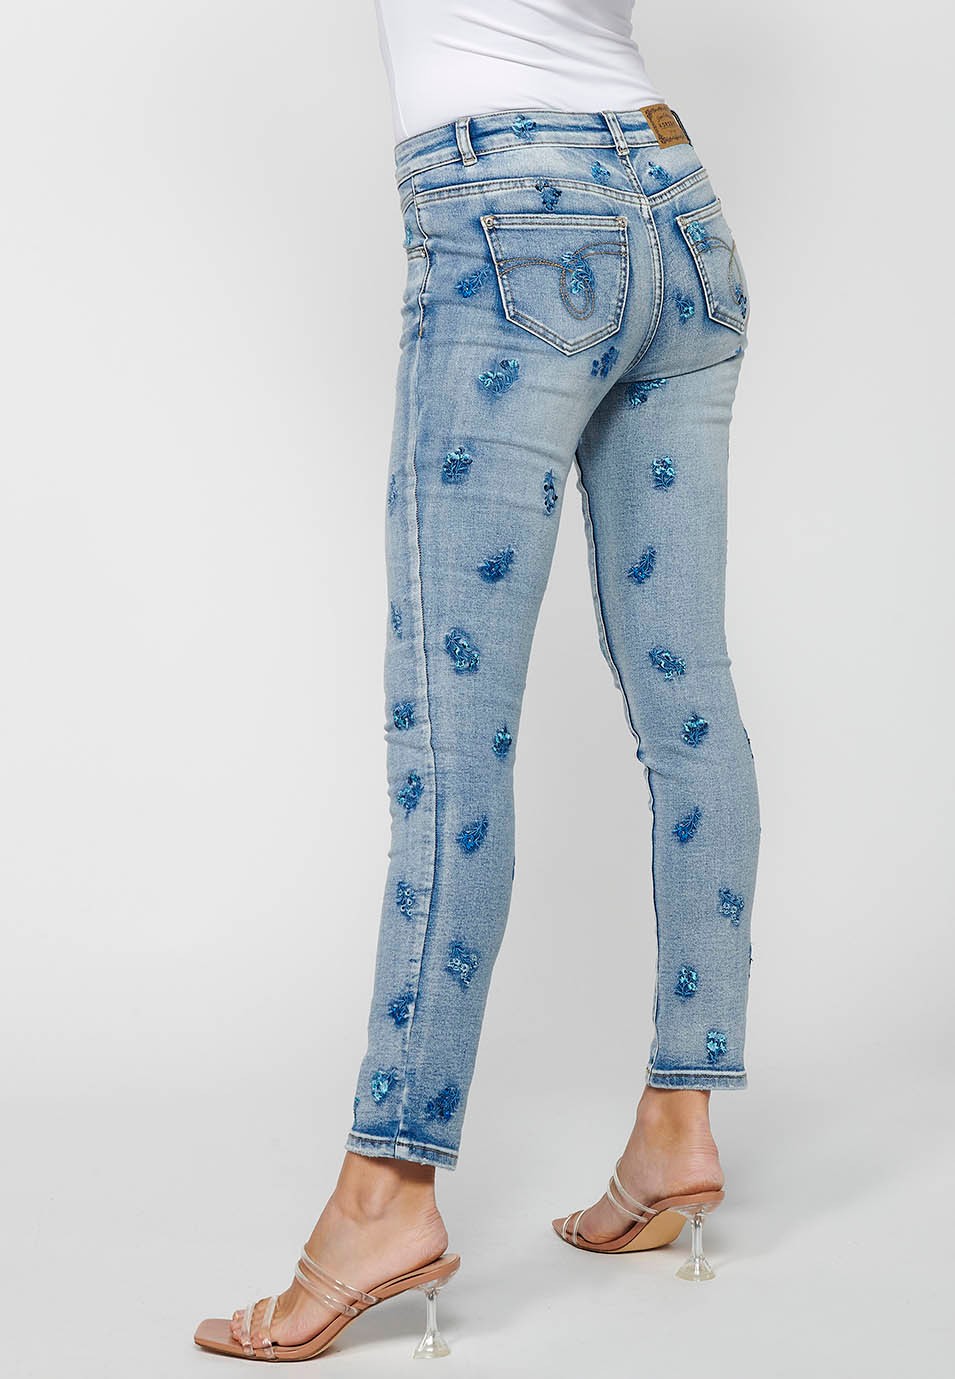 Pantalons llargs slim amb Tancament davanter amb cremallera i botó amb Brodats florals Color Blau Clar per a Dona 8